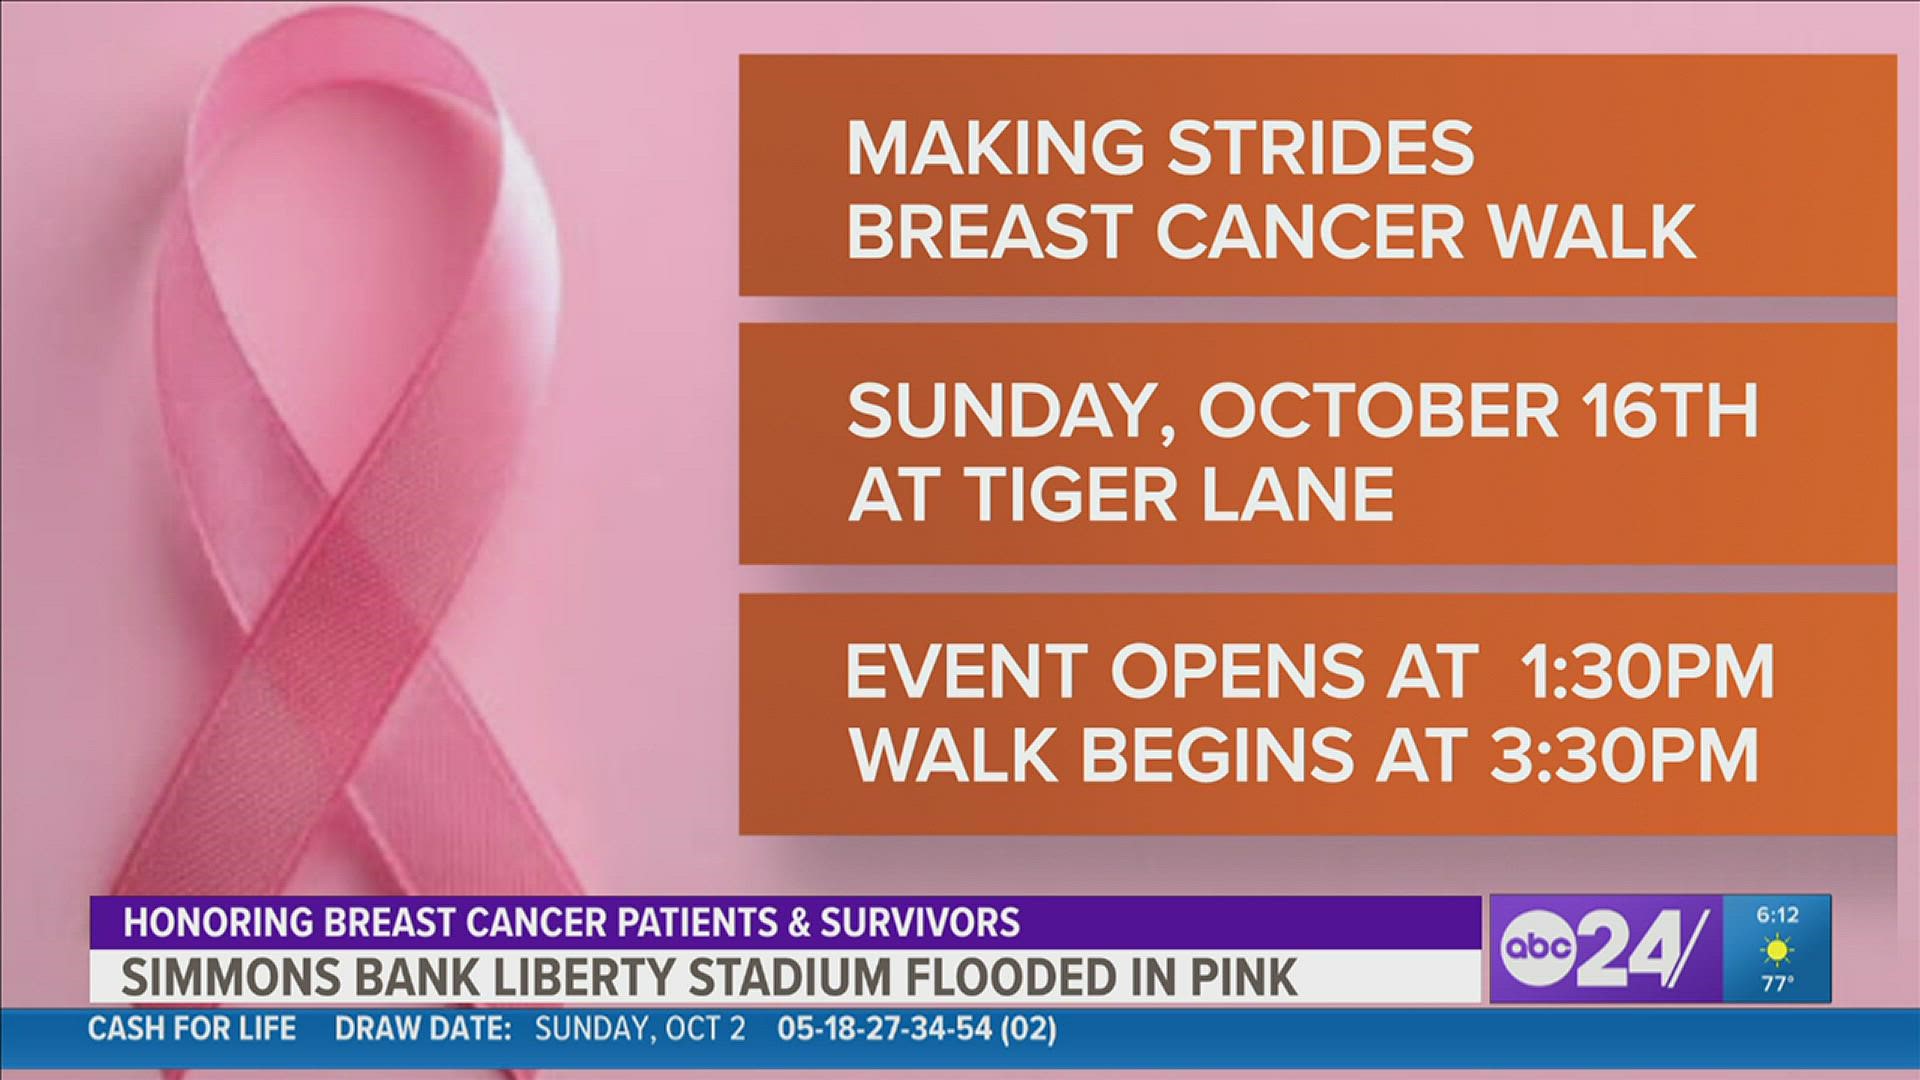 The walk starts at 3:30 p.m. at the Simmons Bank Liberty Stadium.